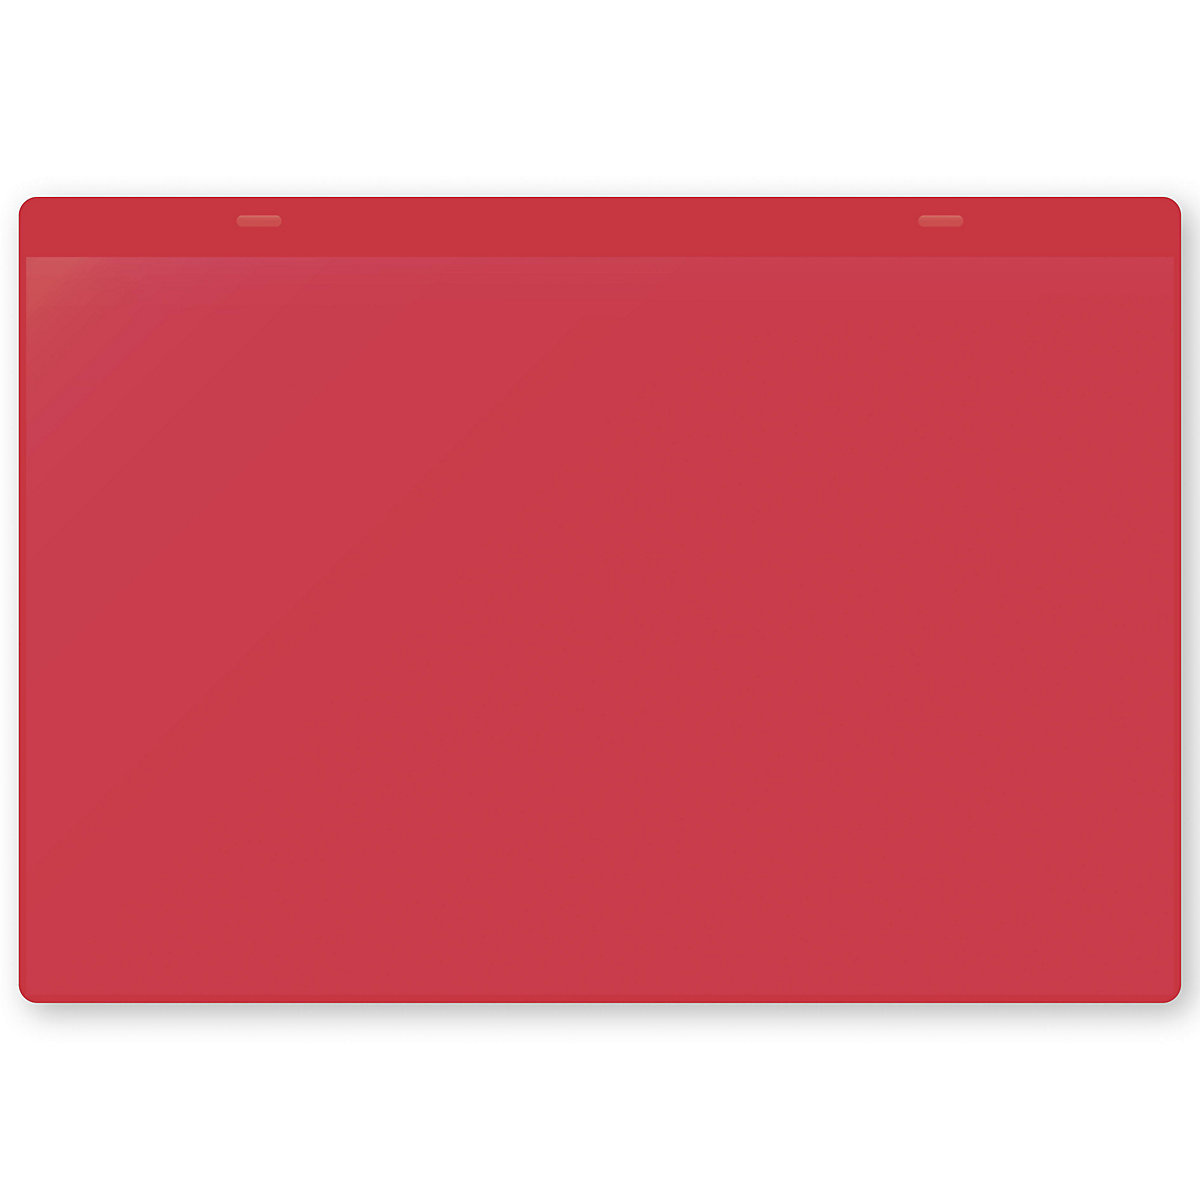 Öntapadó dokumentumtartó tasakok, DIN A4, fekvő, cs. e. 10 db, piros